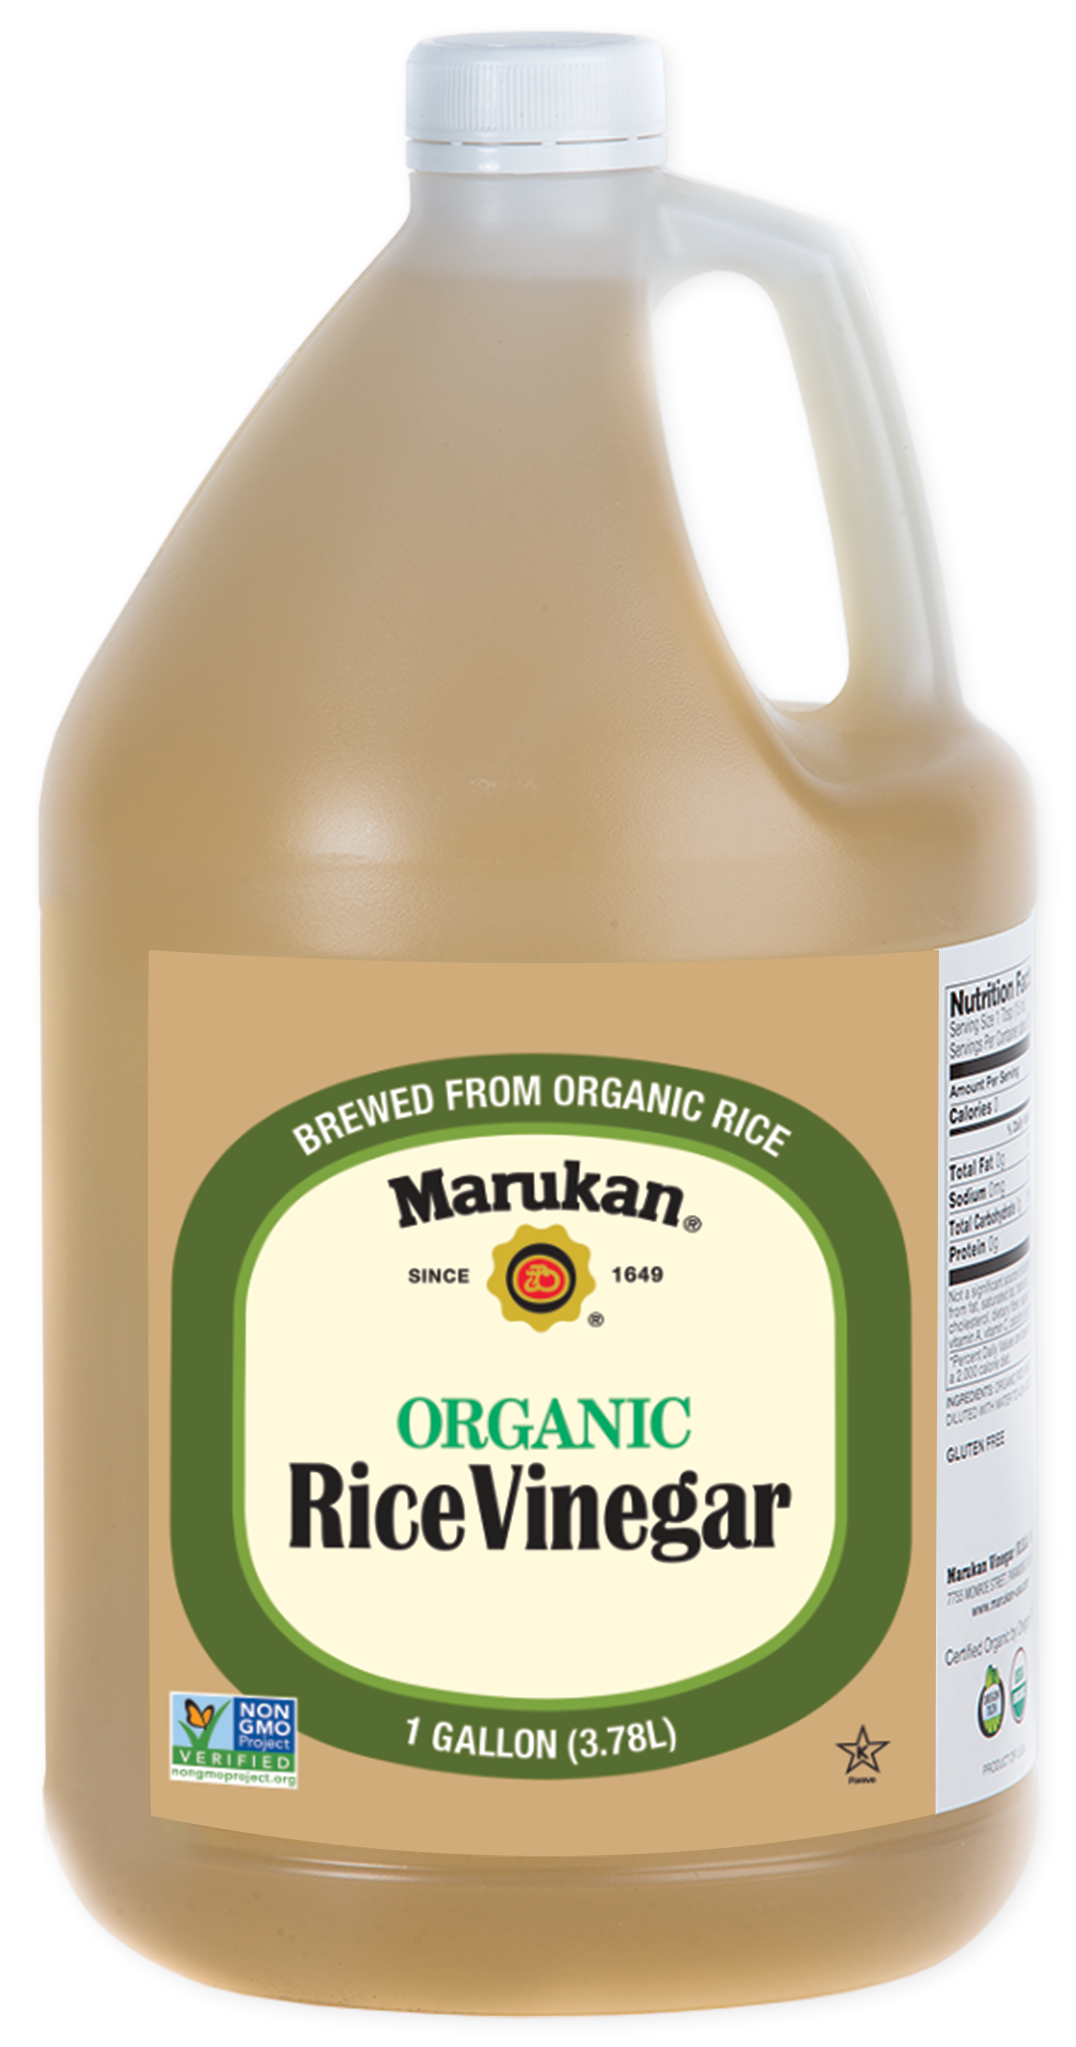 Bottle of Organic Rice Vinegar